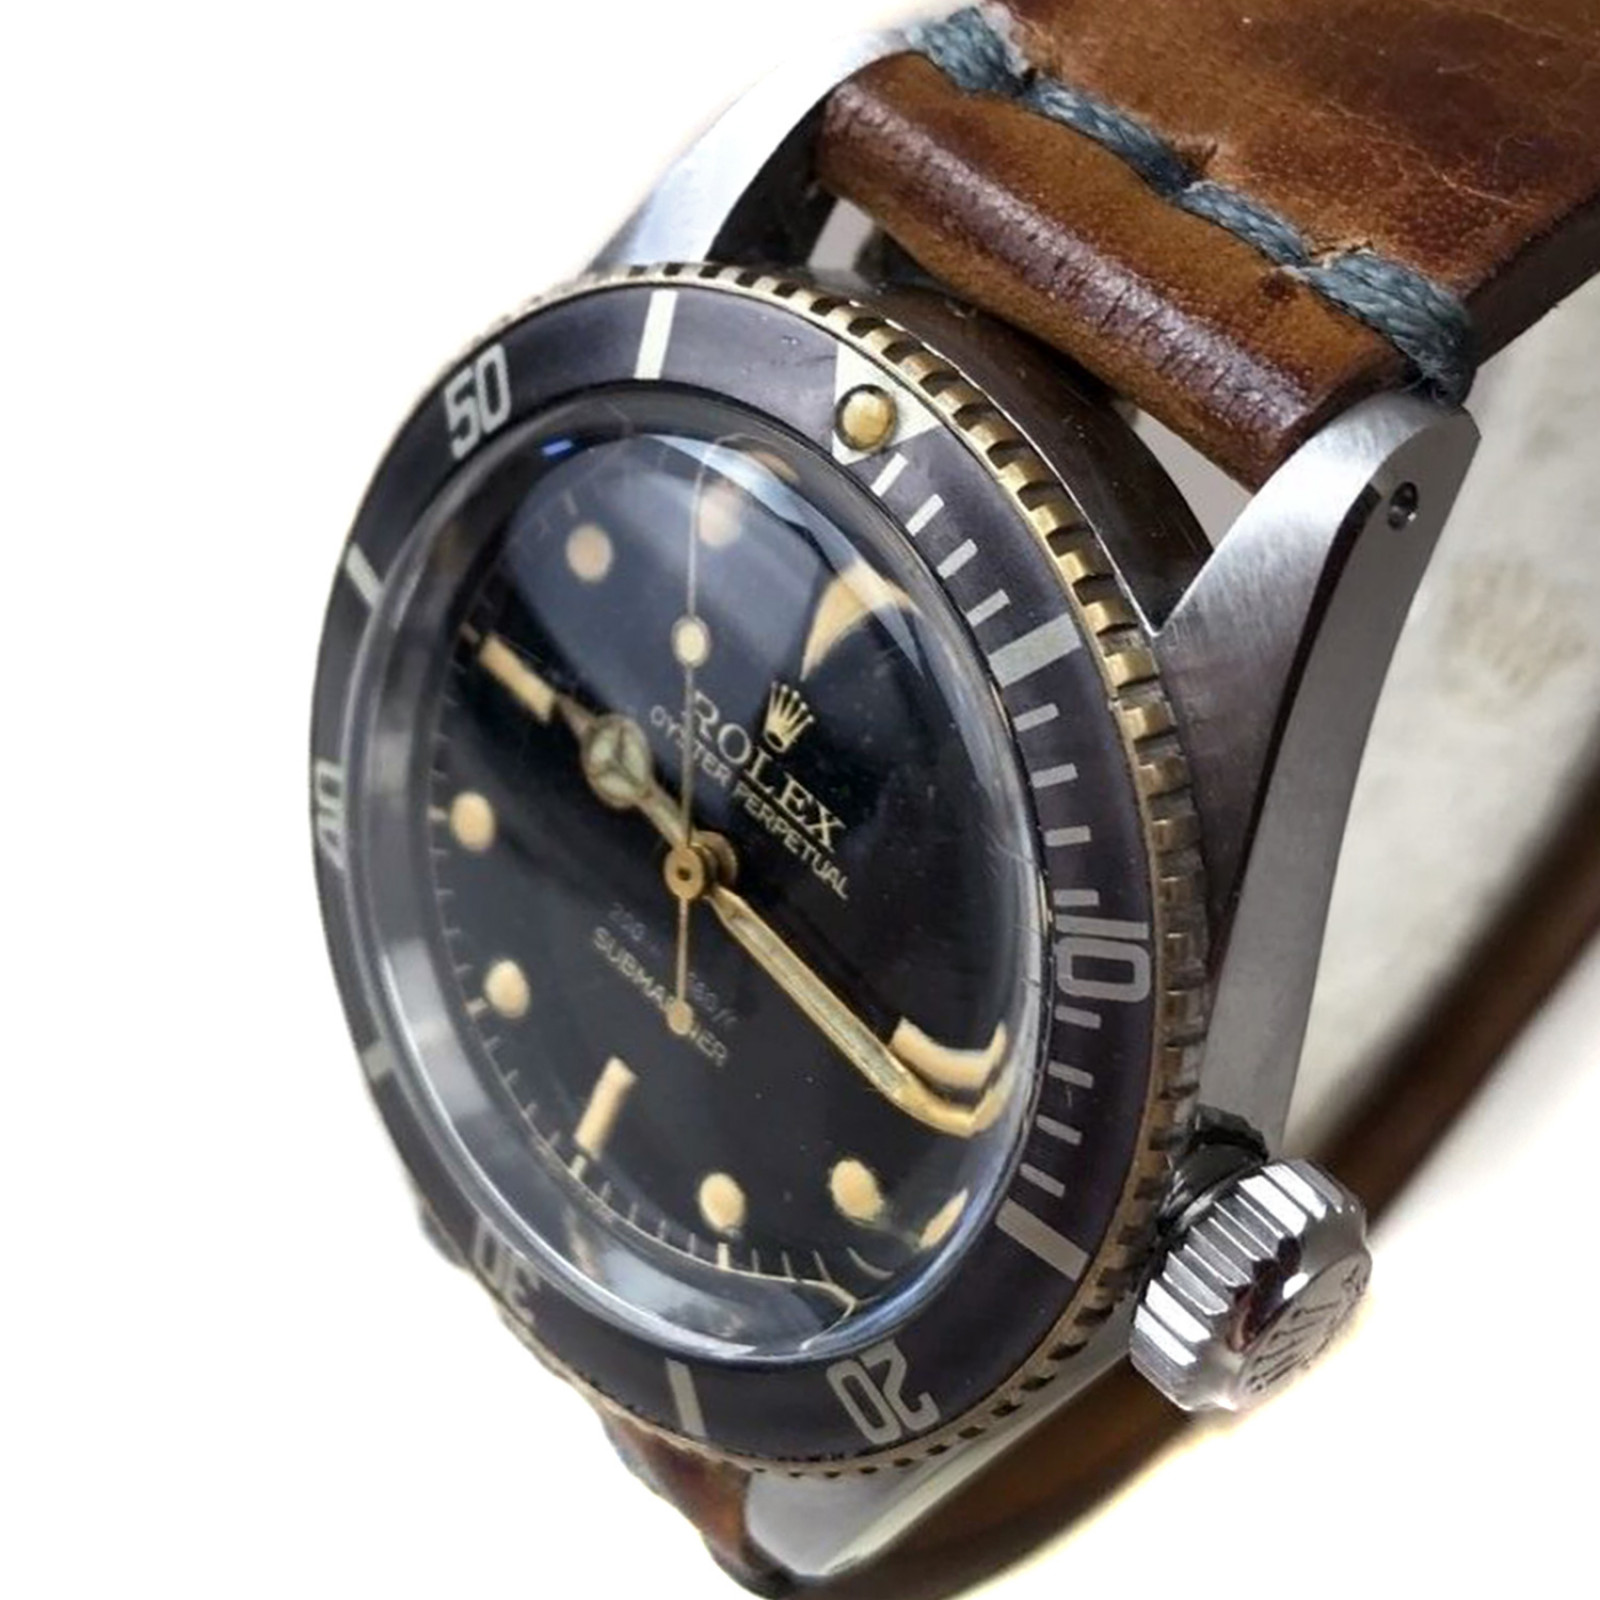 Vintage Rolex 6538 38 mm Steel on Strap, Black Bezel